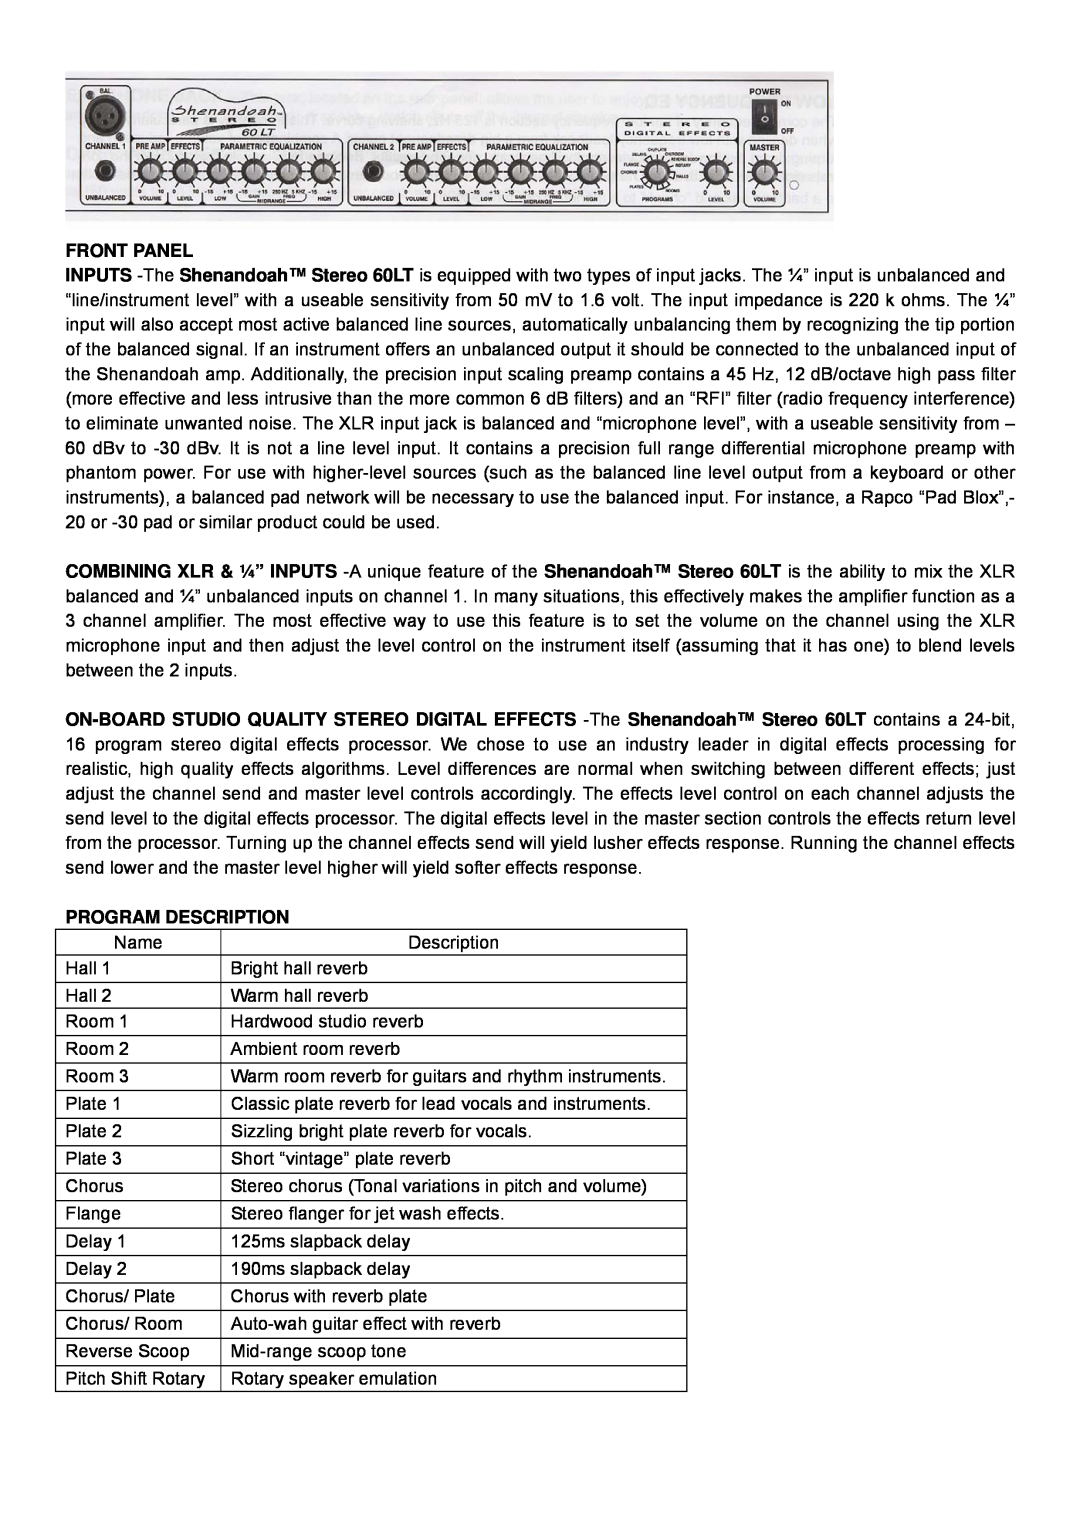 Genz-Benz 60LT owner manual Front Panel, Program Description 